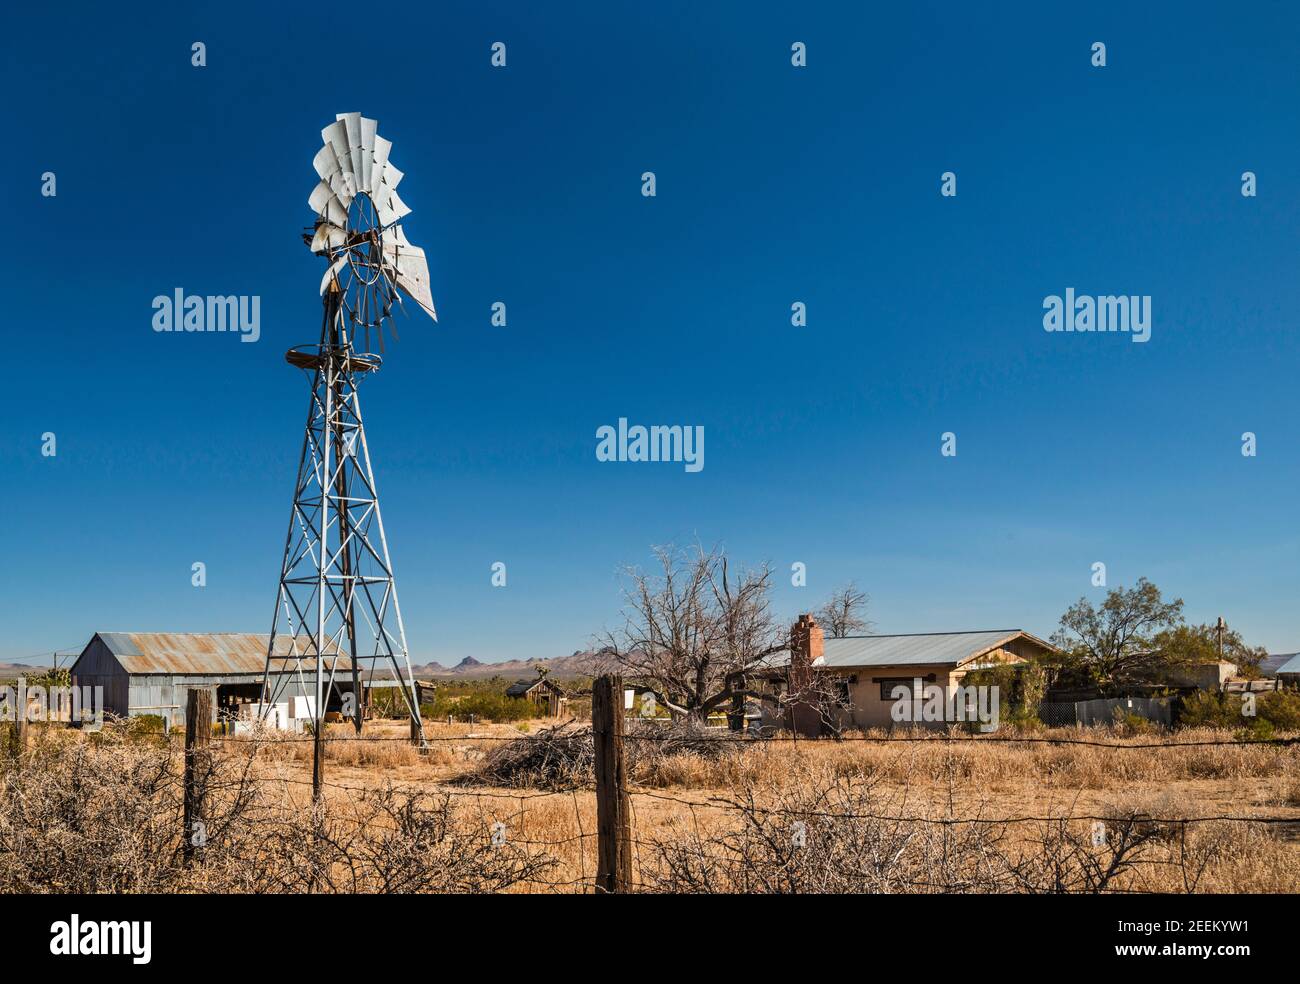 Pompa d'acqua stile Aermotor al ranch presso il sito di Lanfair, Lanfair Valley, Mojave National Preserve, California, USA Foto Stock